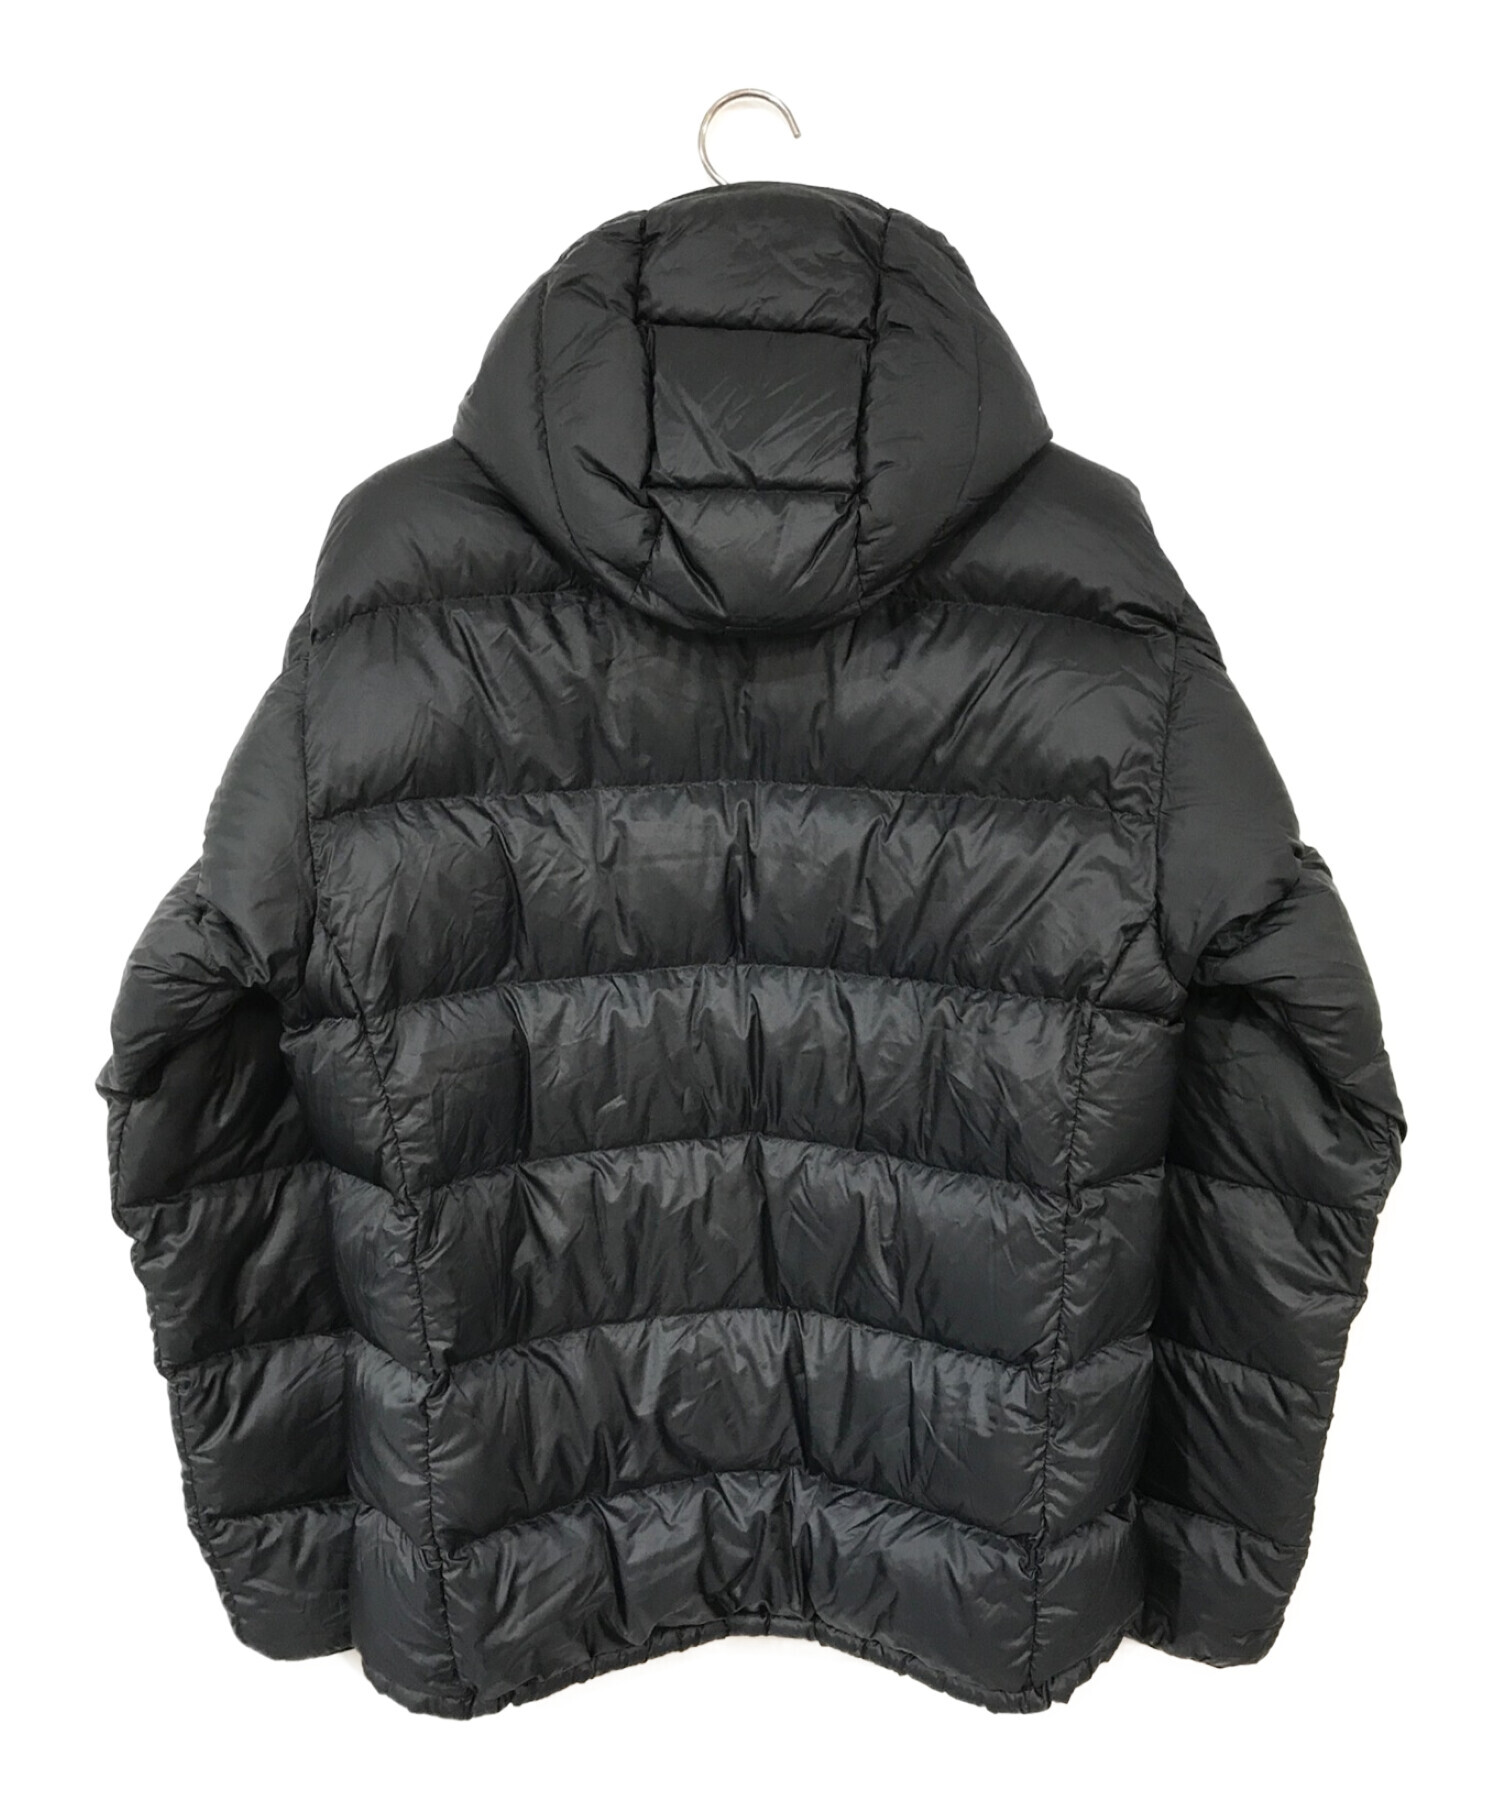 Nisuumontbell〈puffer jacket 00s alpine black〉